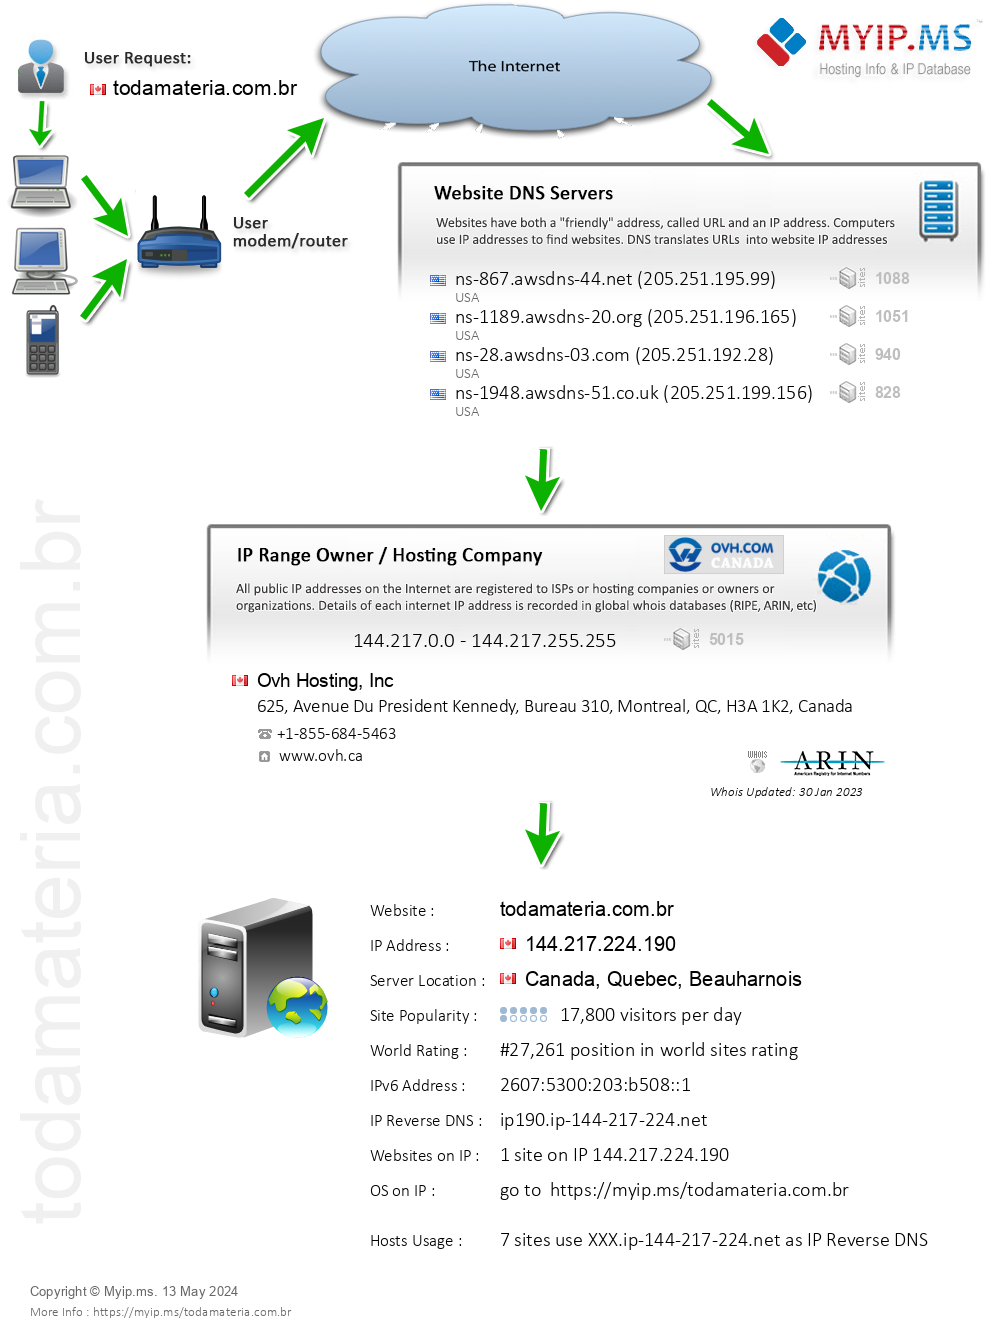 Todamateria.com.br - Website Hosting Visual IP Diagram